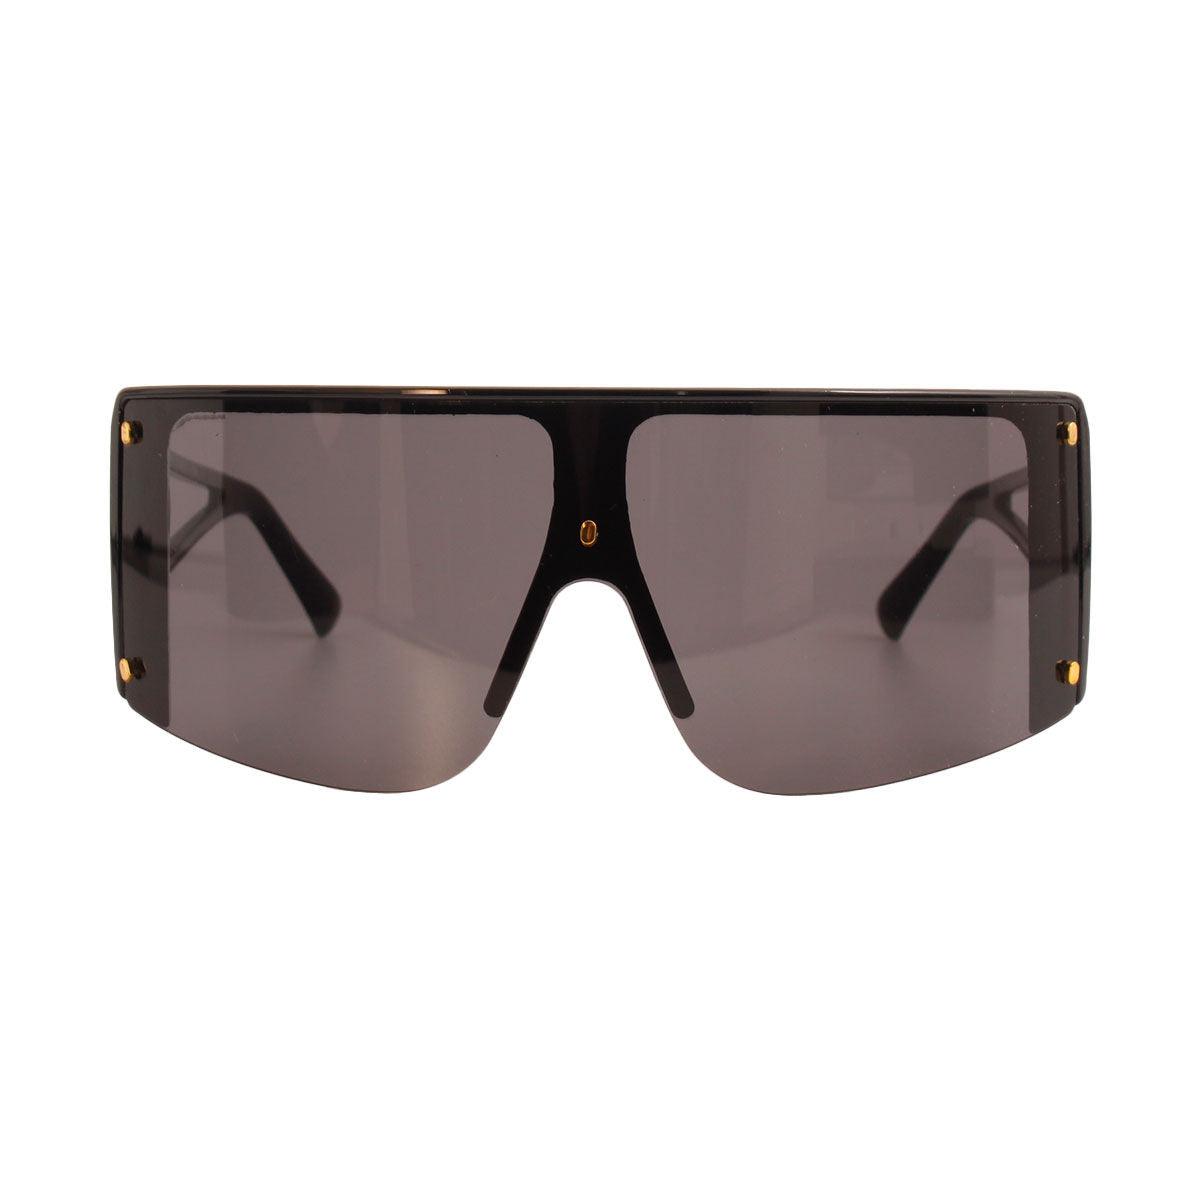 Black Frame Visor Elevate Stylish Sunglasses for Women